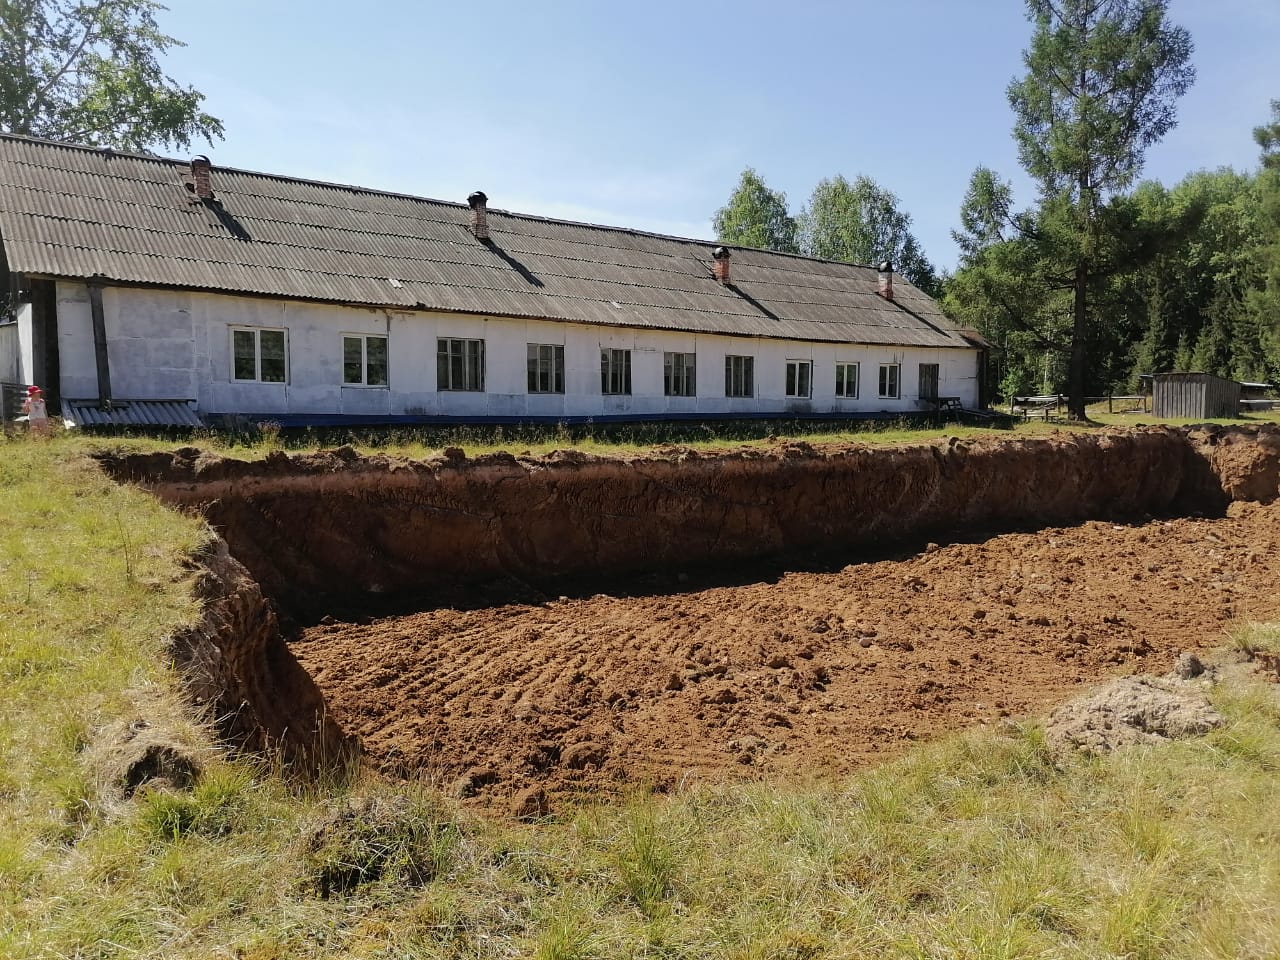 5 июля 2021 года. На месте будущей школы в поселке Платина вырыт котлован. Идут работы по возведению фундамента 